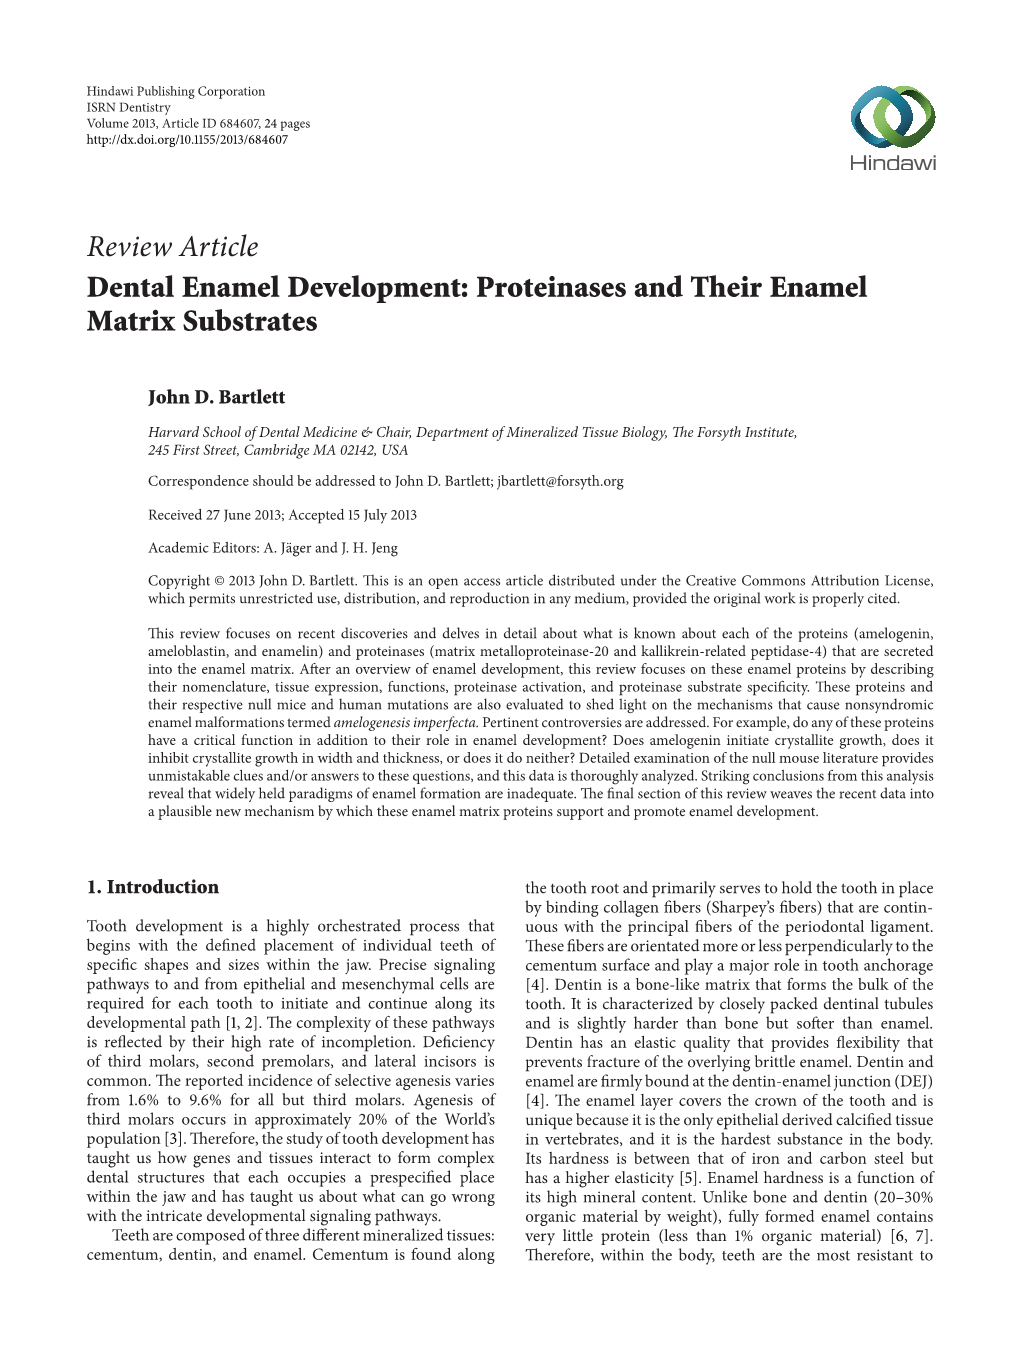 Dental Enamel Development: Proteinases and Their Enamel Matrix Substrates